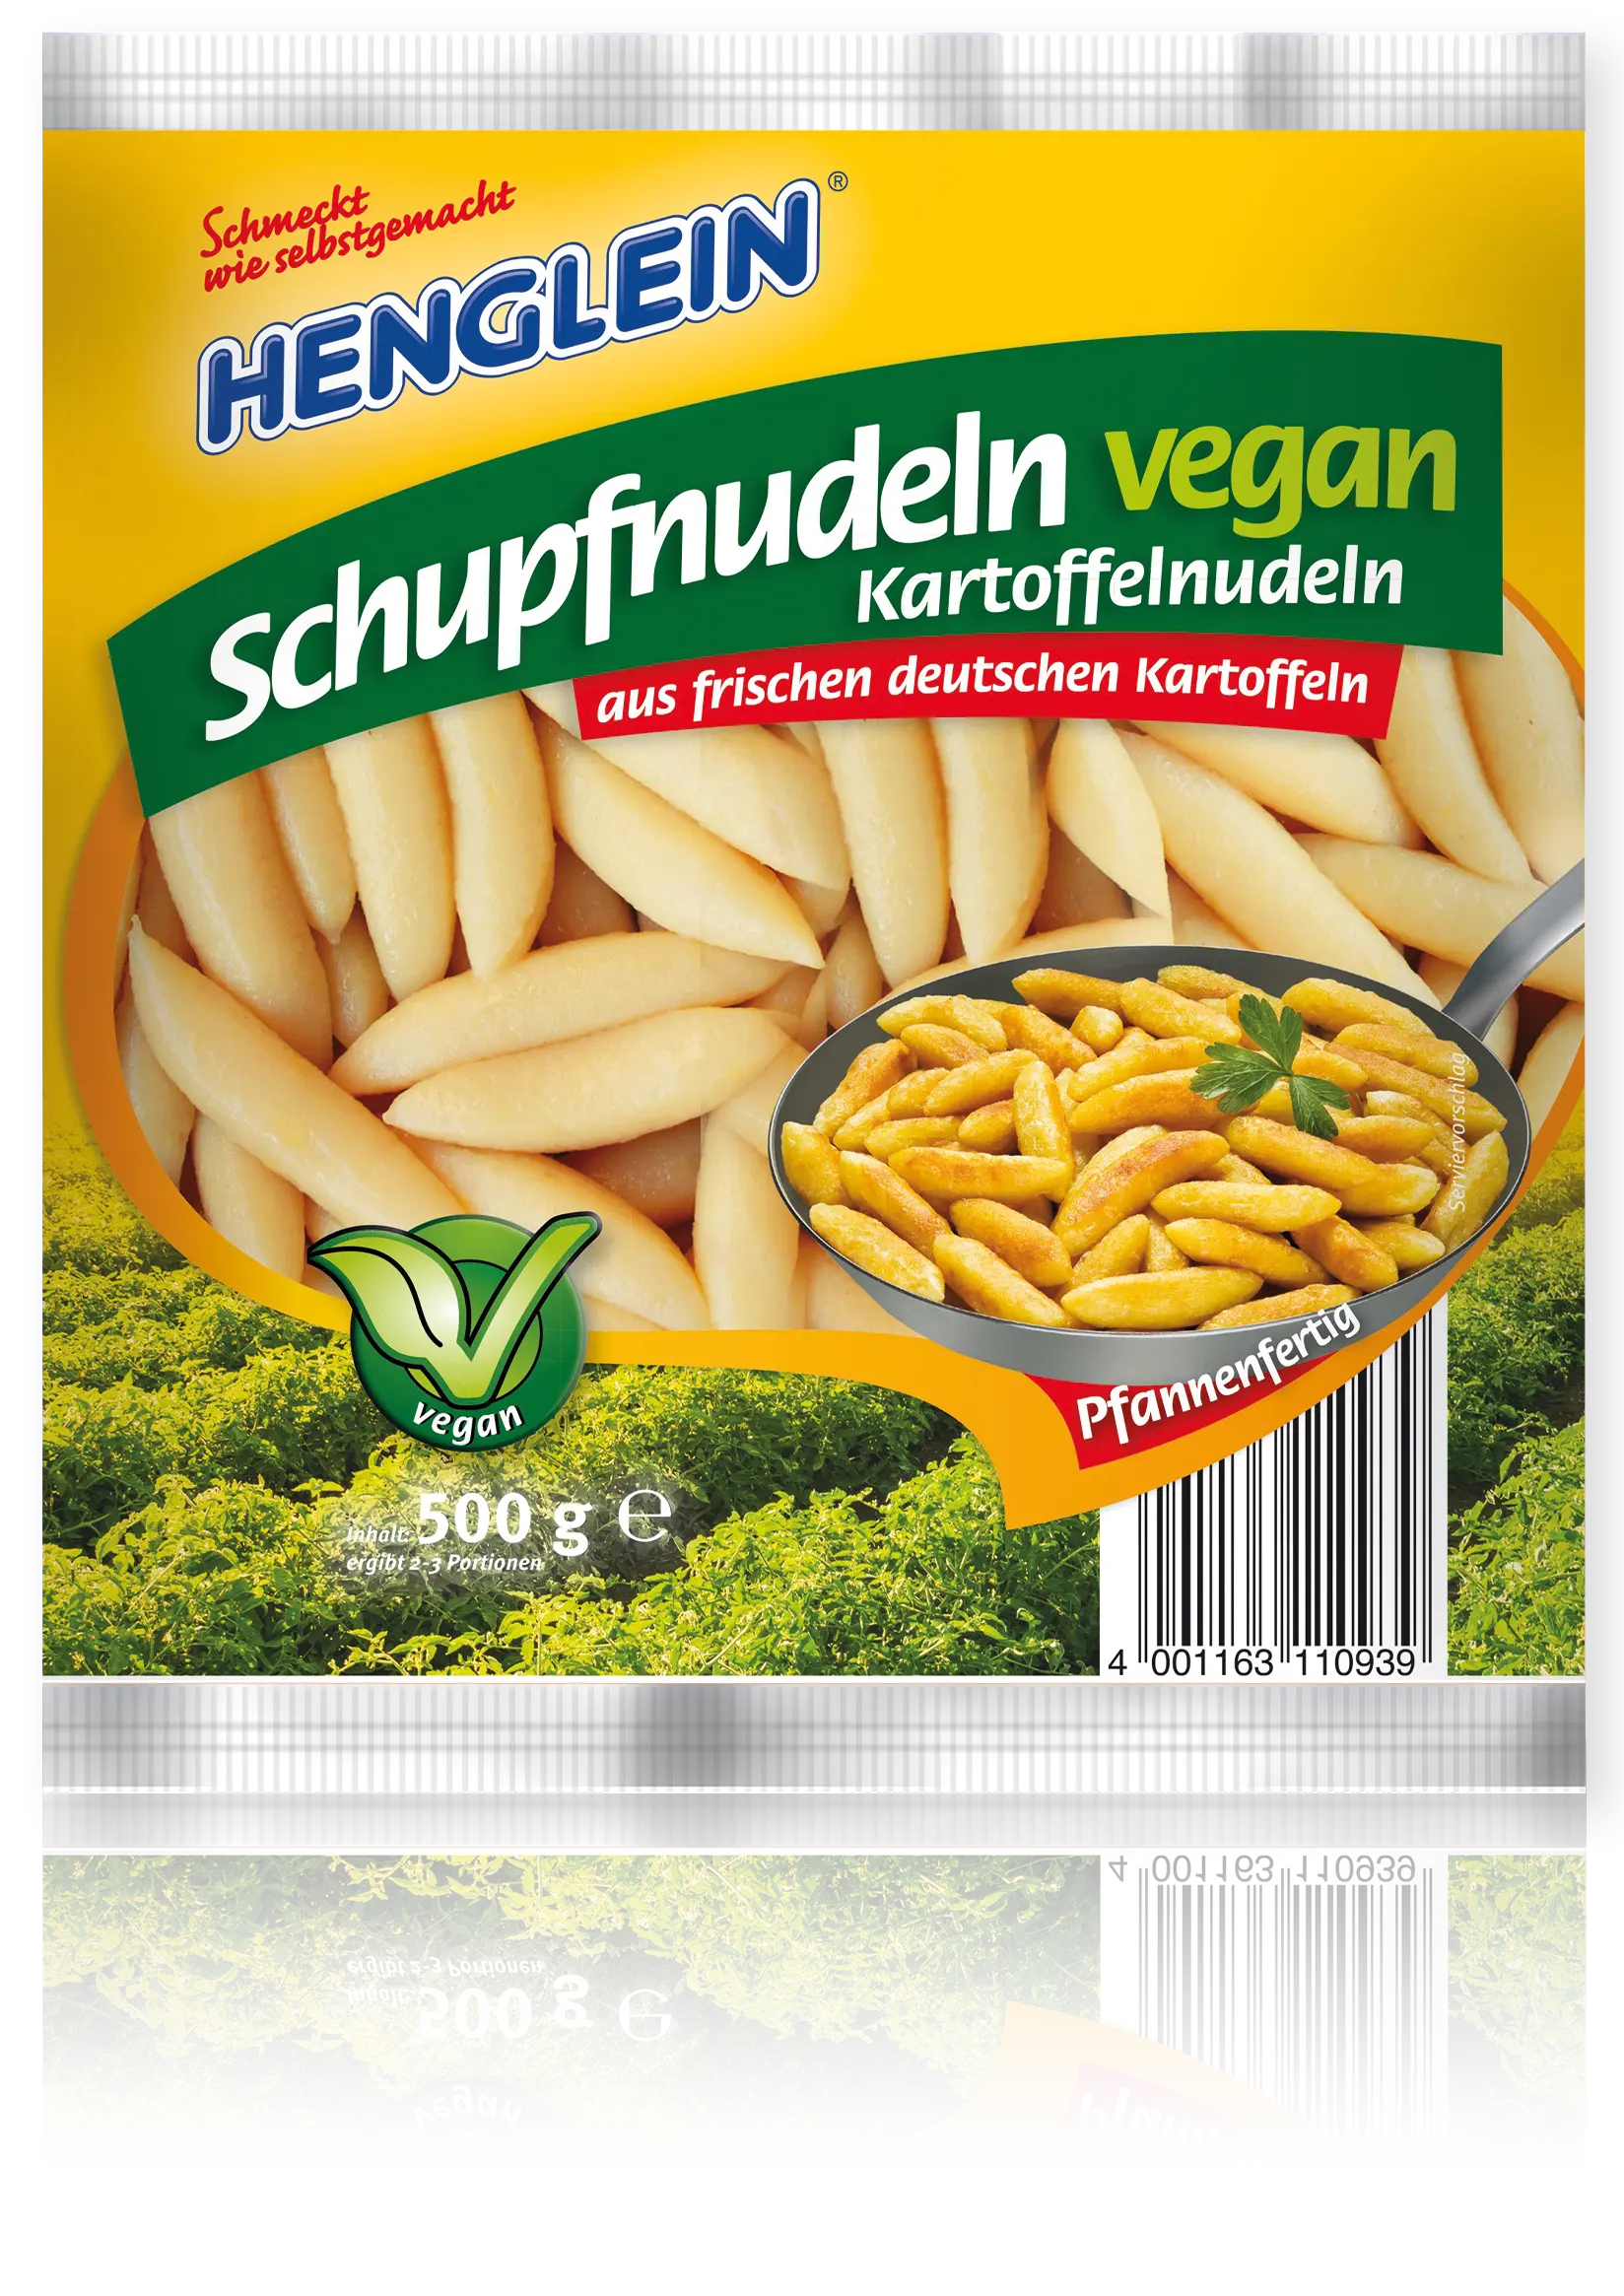 Schupfnudeln vegan von HENGLEIN